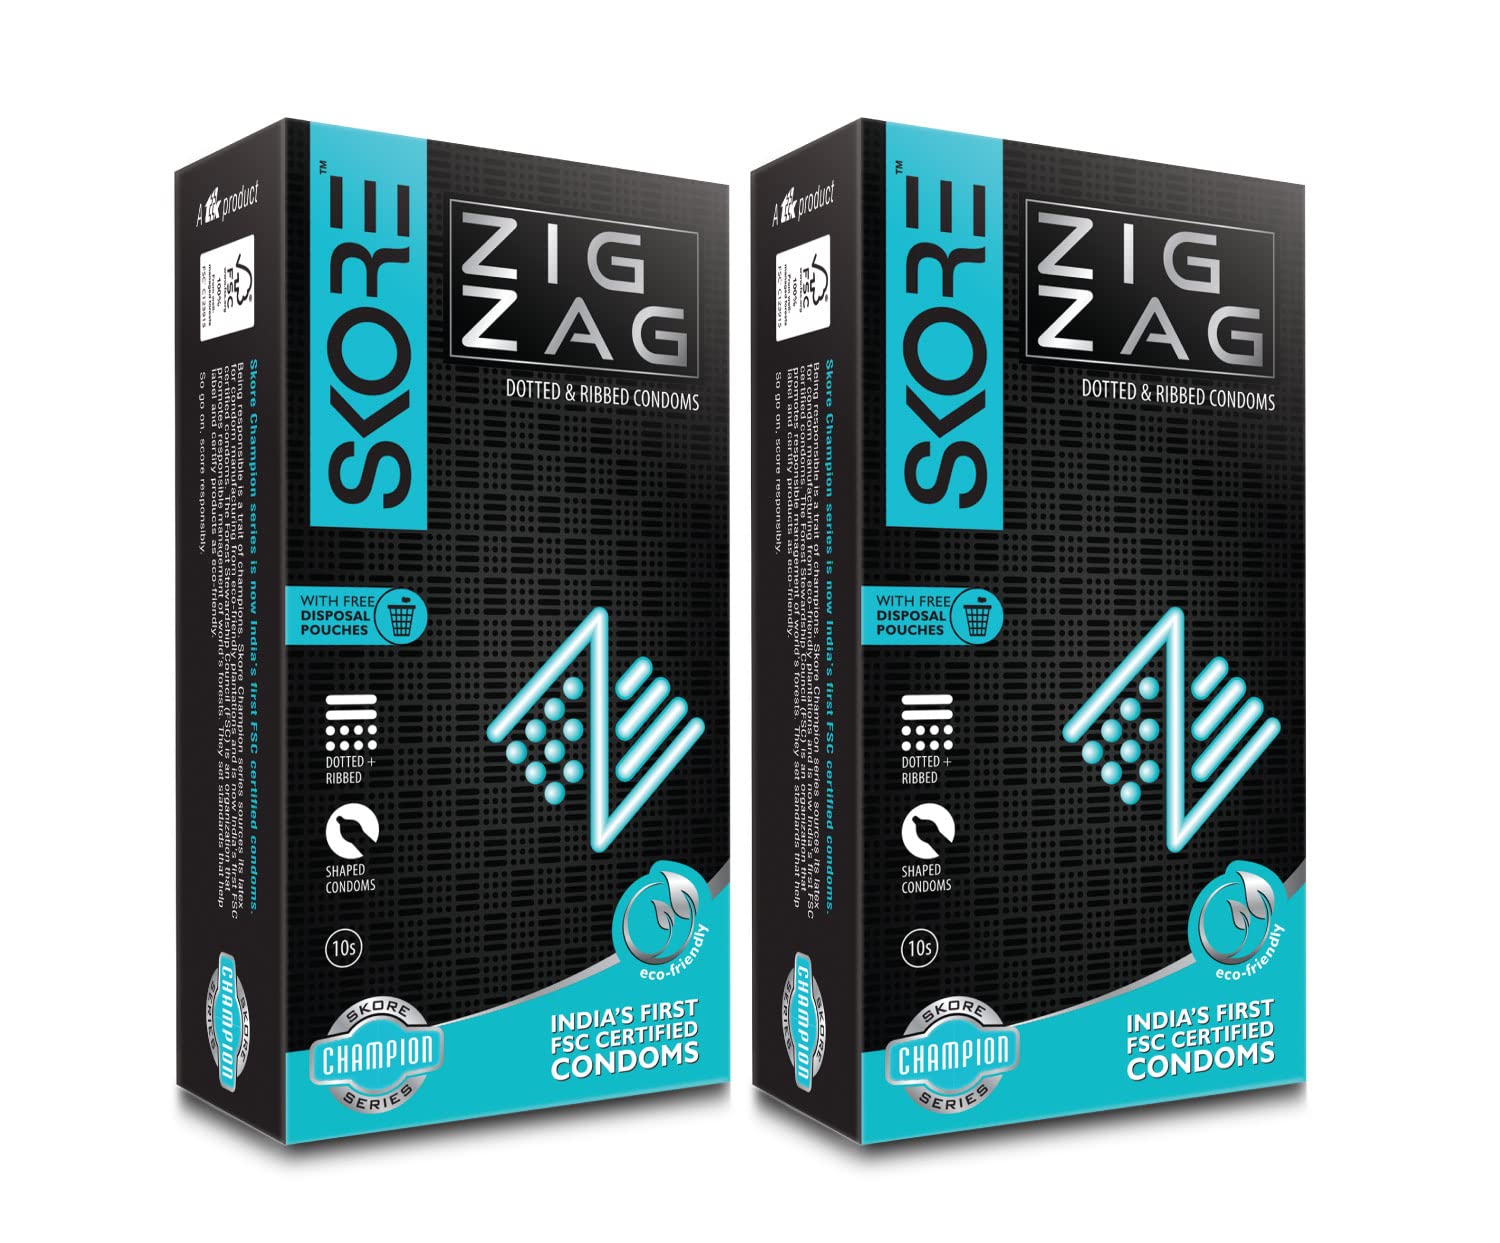 Skore Zig Zag Dotted Condoms,10N Per Pack - (Pack of 2)